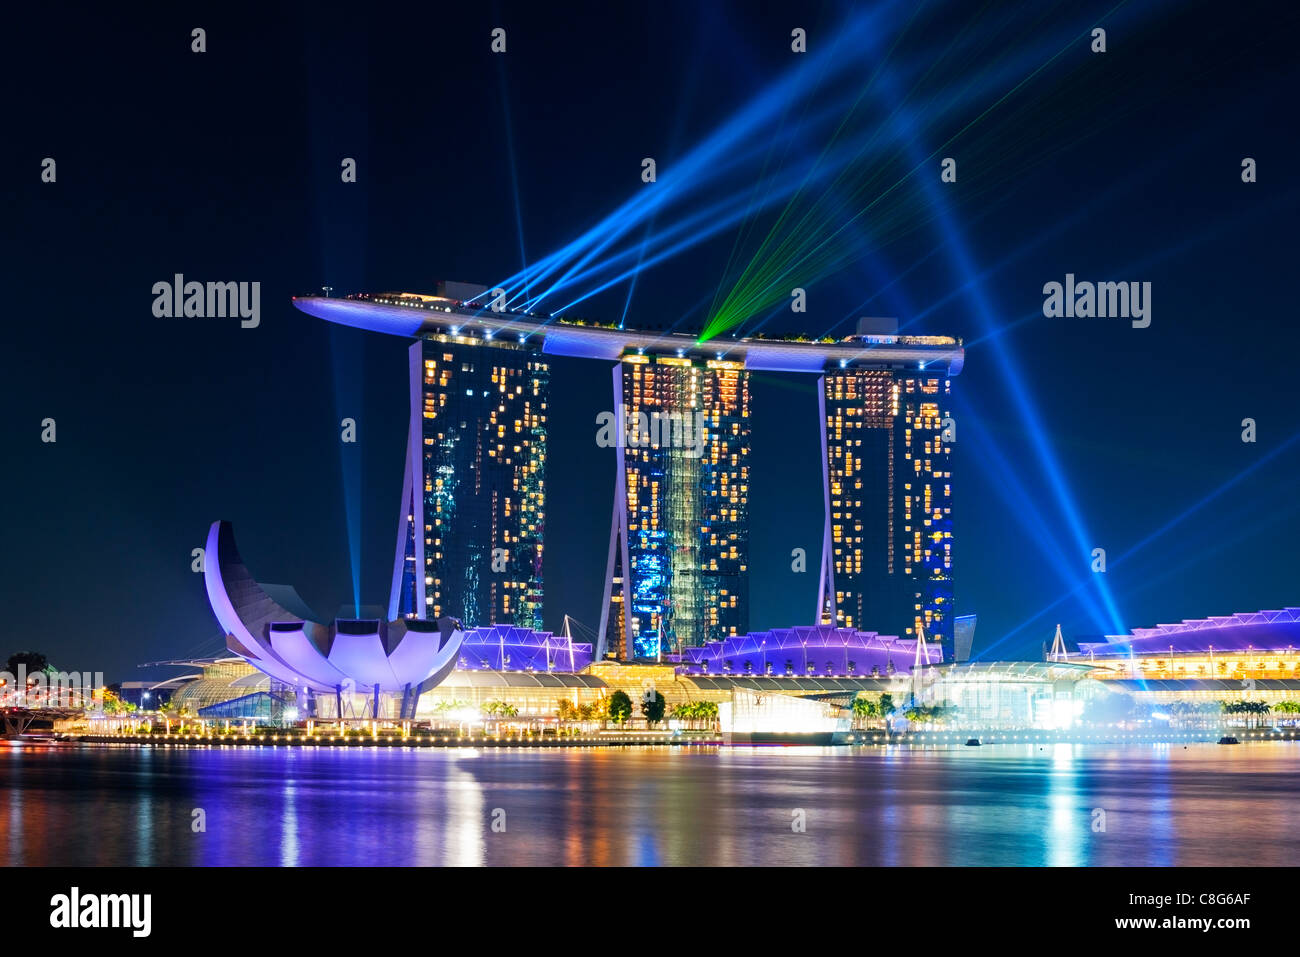 La lumière nocturne et de l'eau, spectacle étonnant 'Plein', avec des lasers à la Marina Bay Sands Hotel, Singapore Banque D'Images